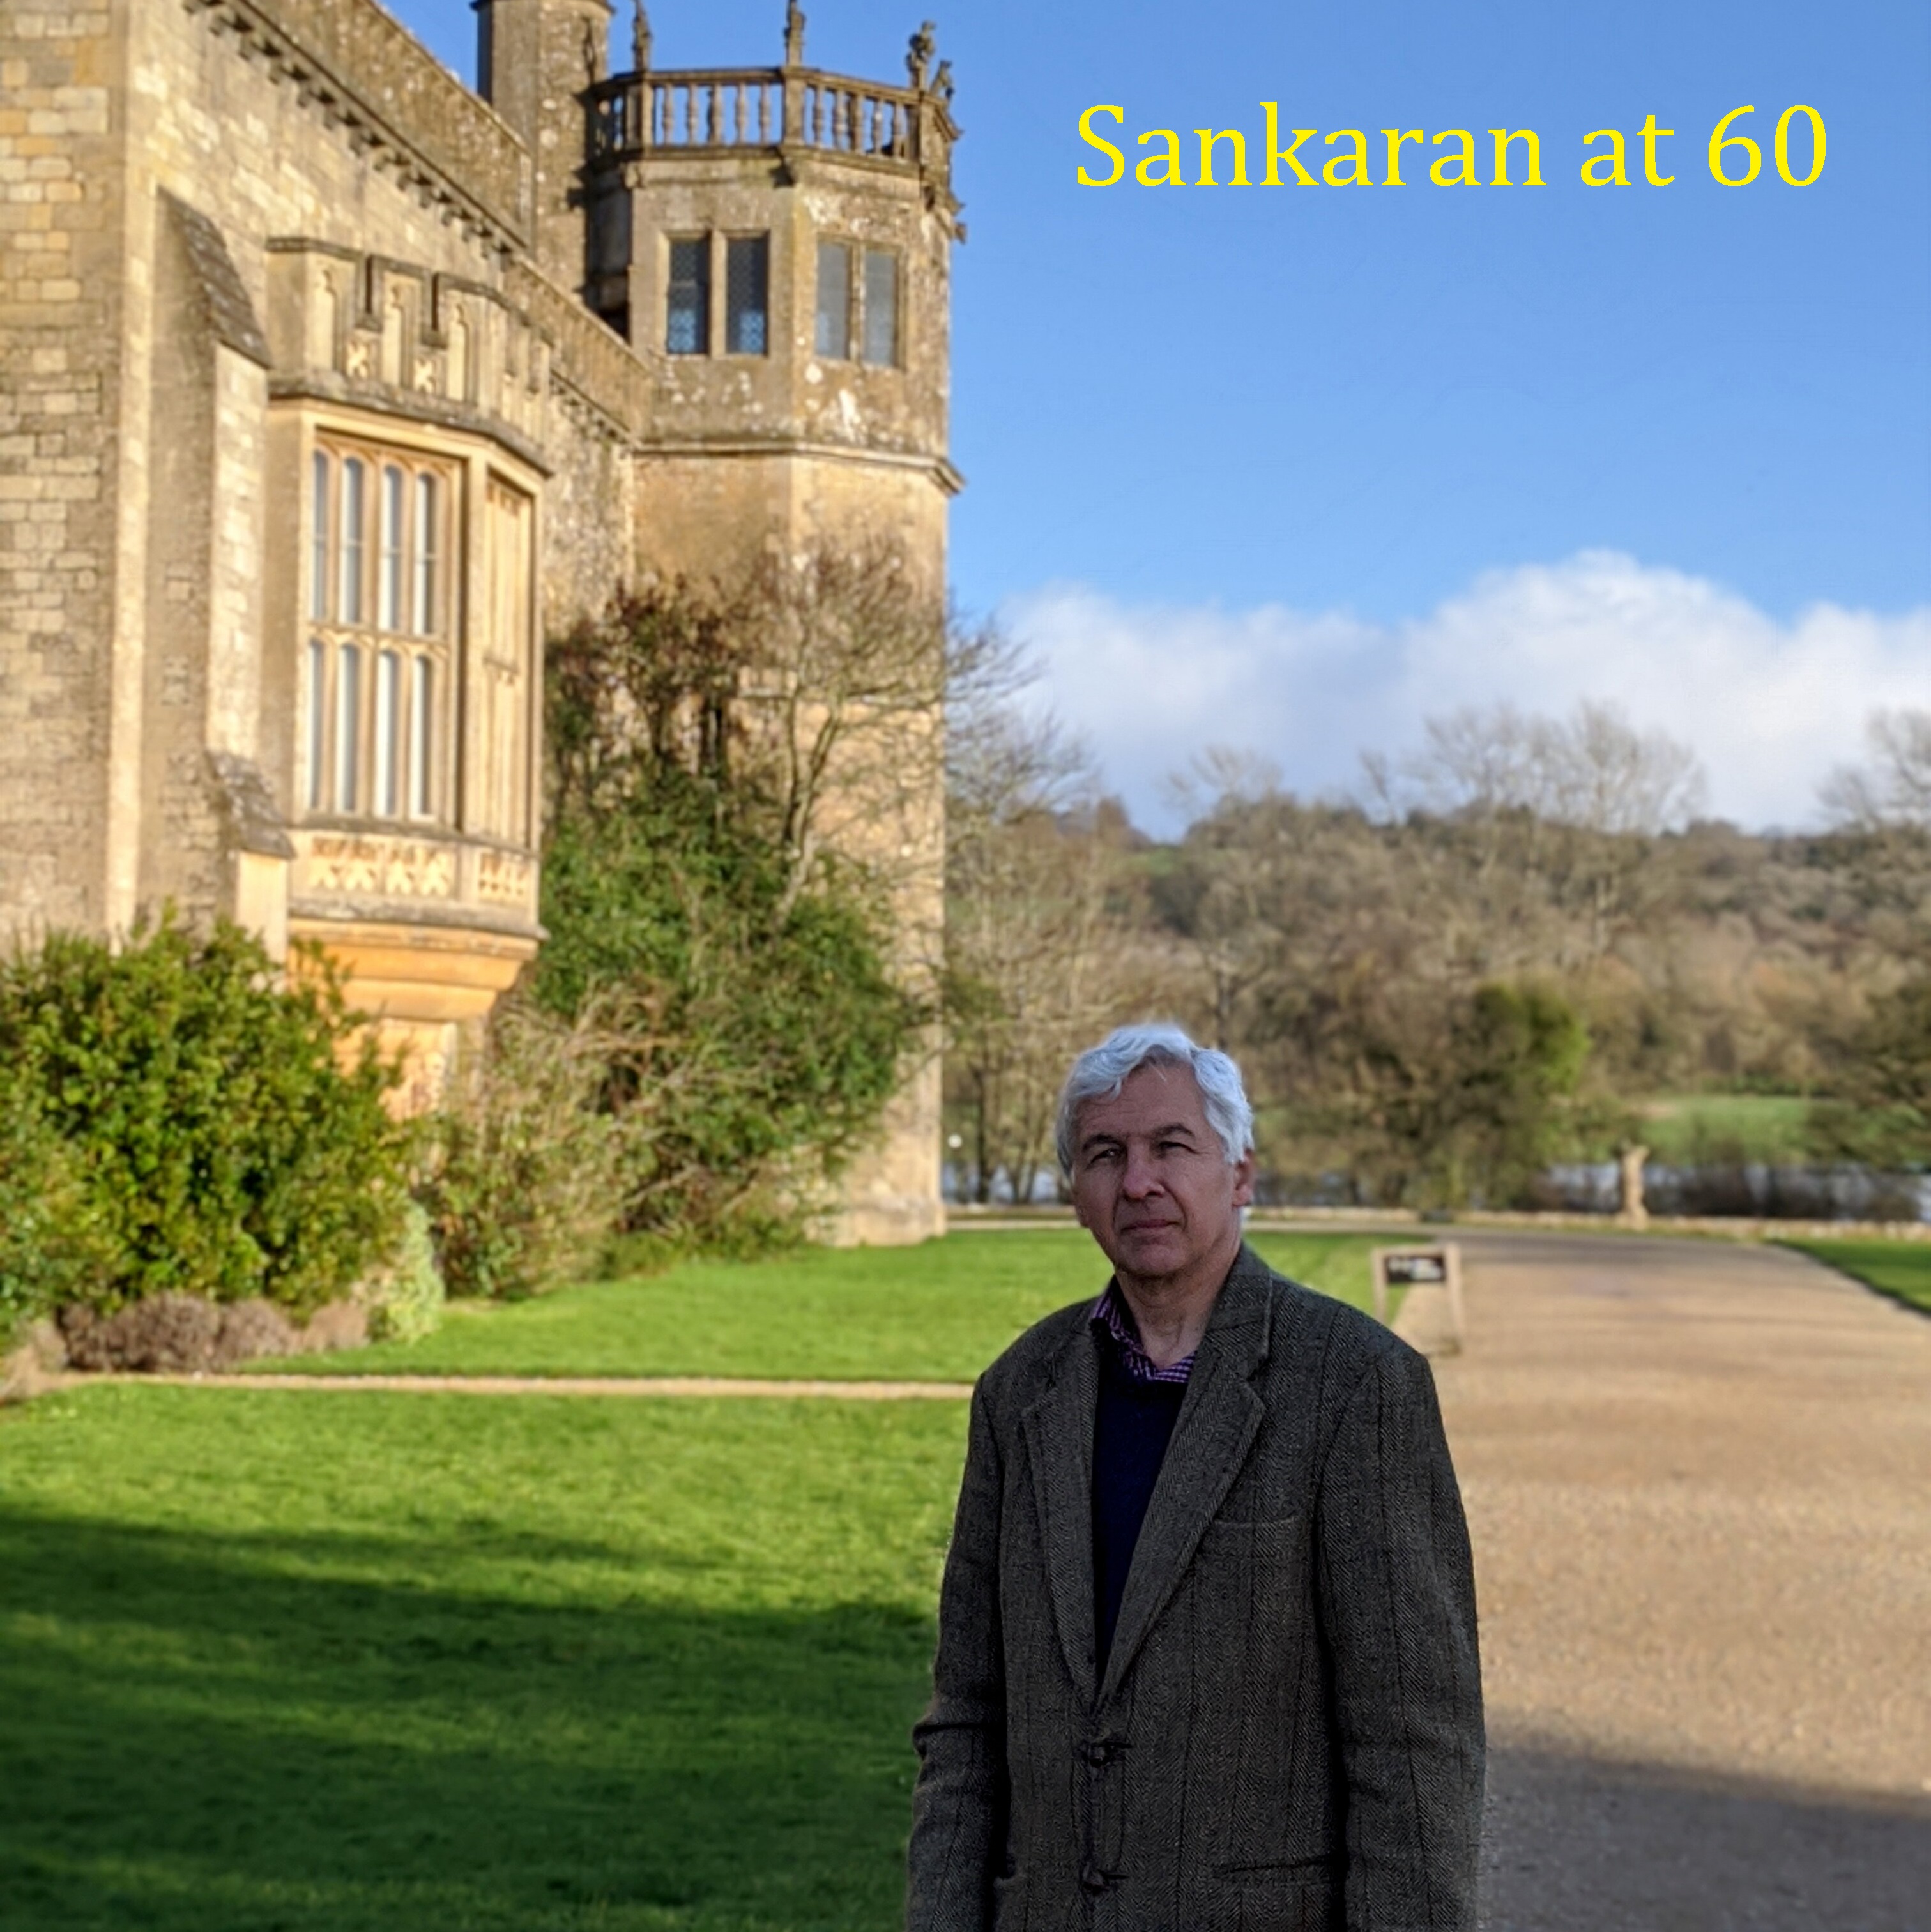 Sankaran at 60